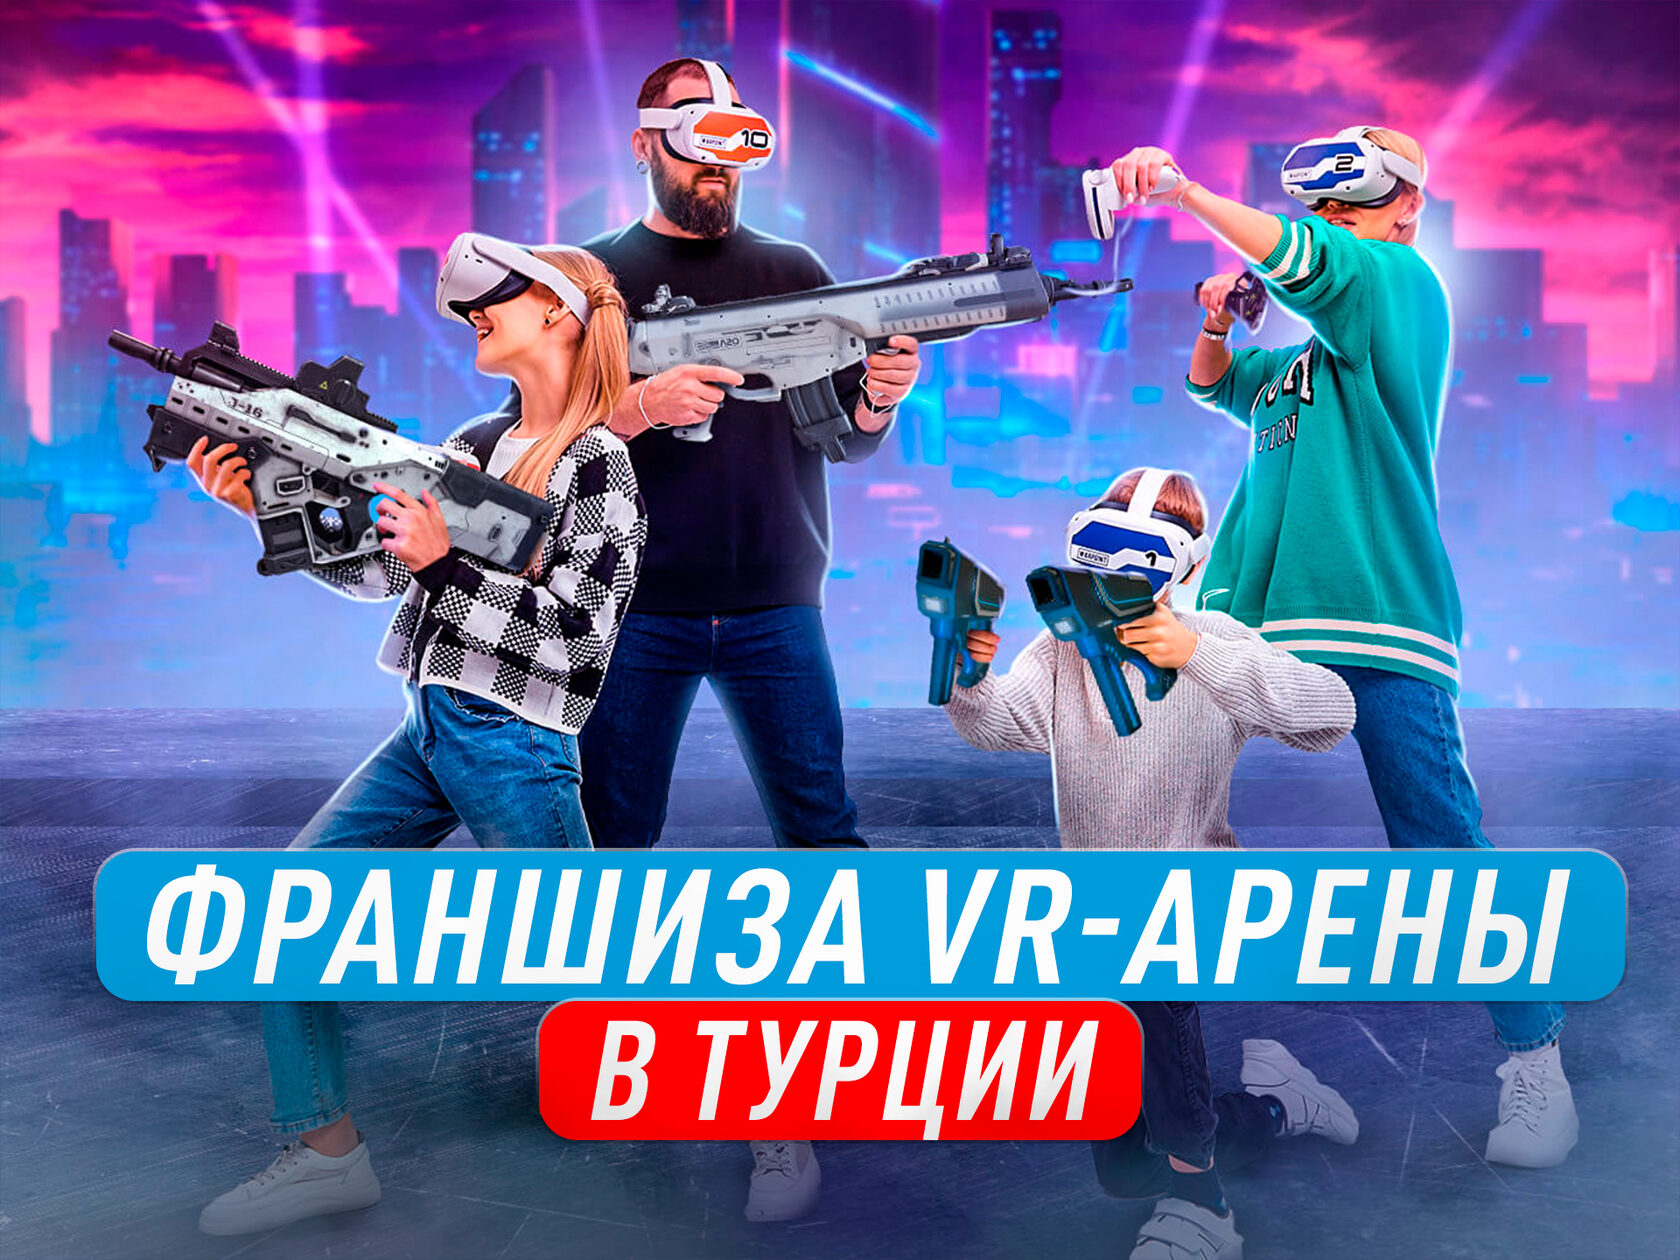 Vr франшиза. Франшиза VR. VR Arena франшиза. Франшиза клубов виртуальной реальности. VR франшизы Россия ведущие.